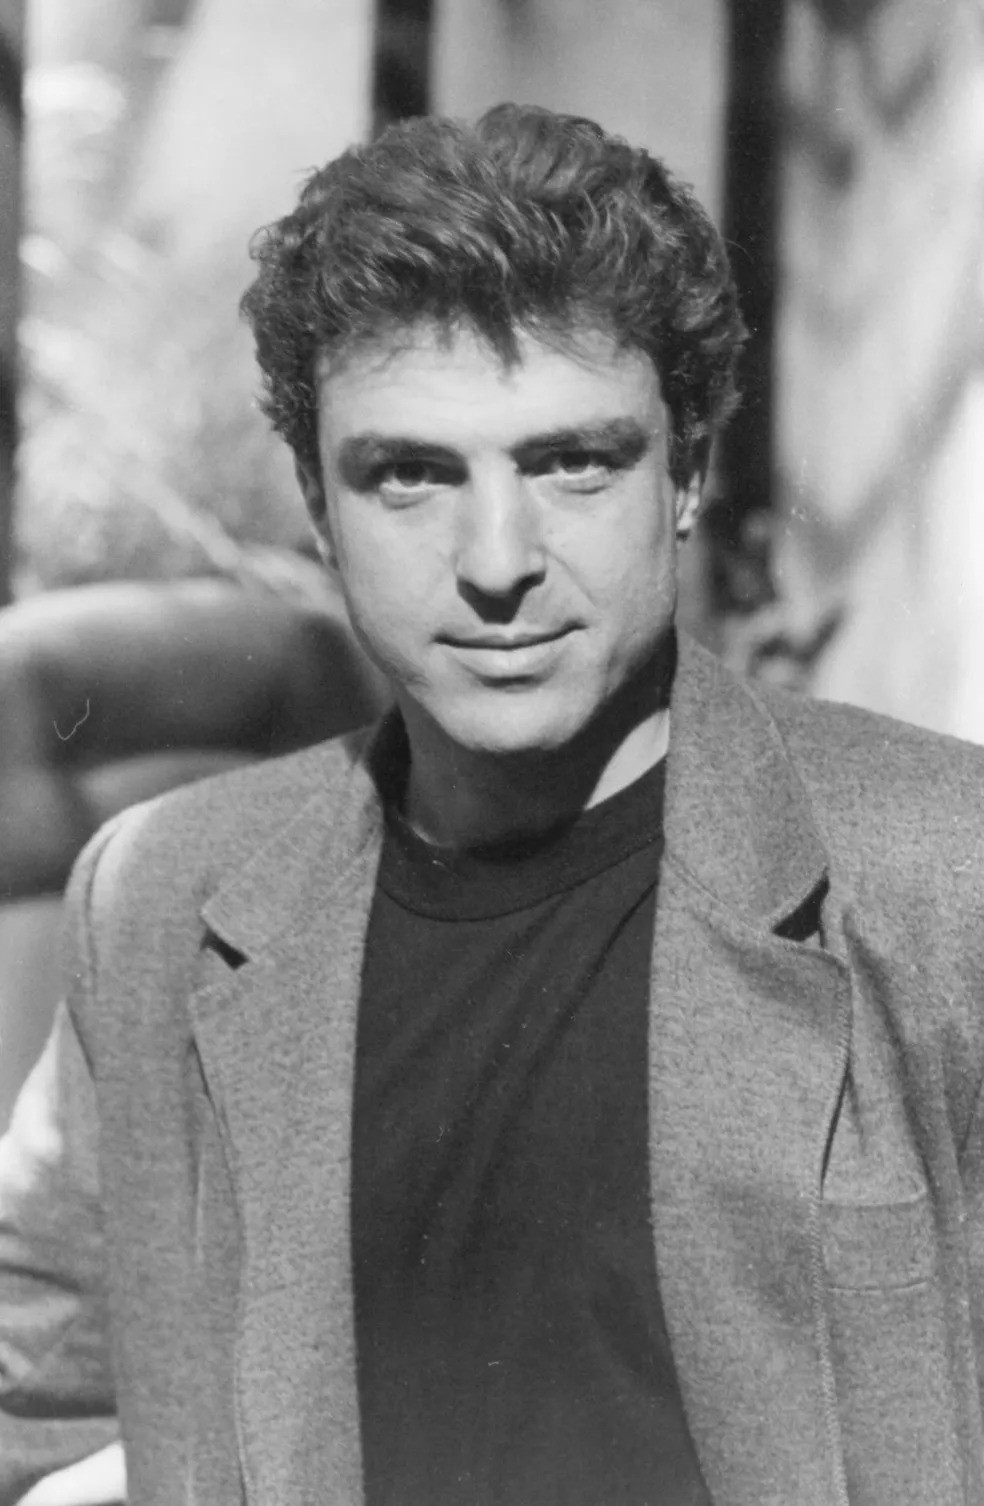 Carlos Alberto Riccelli estreou na TV ainda nos anos 1970, mas ganhou a fama de galã em novelas da década de 1980, como "Vale tudo" — Foto: Bazilio Calazans/TV Globo